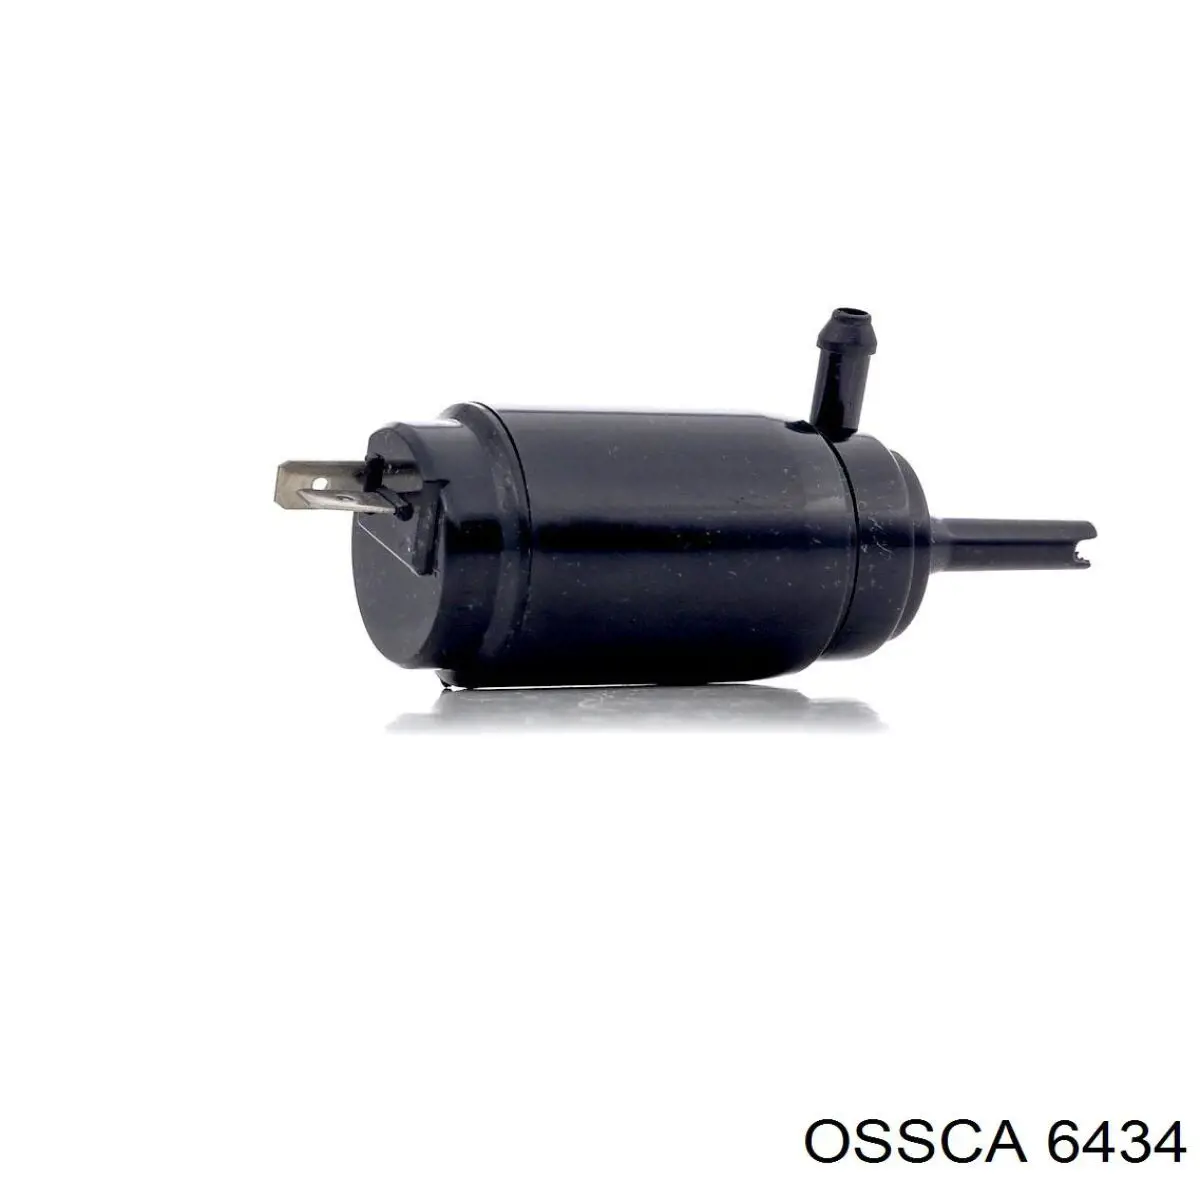 6434 Ossca щуп (индикатор уровня масла в двигателе)